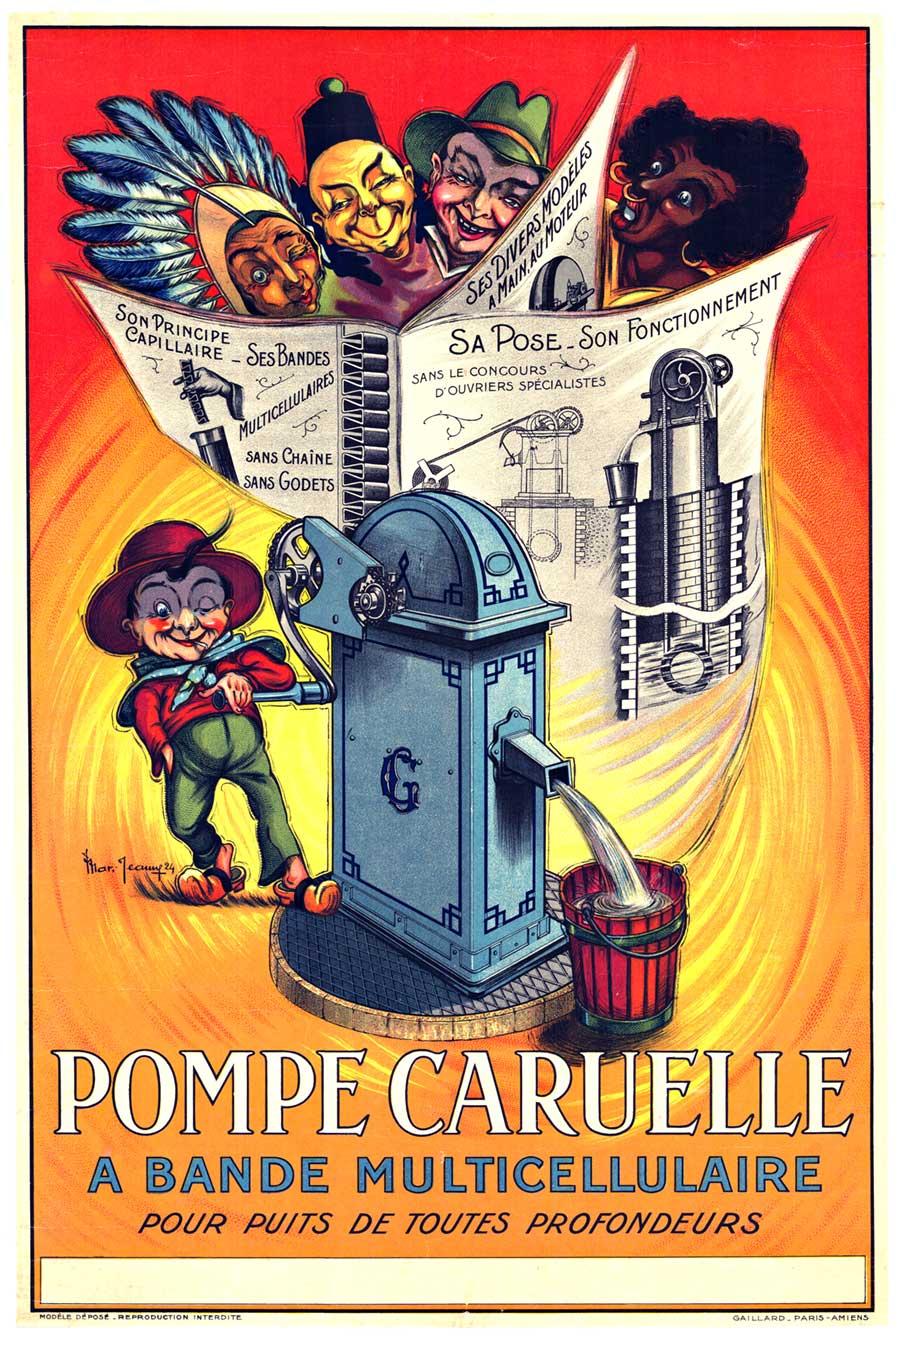 Pompe Caruelle - pompe à eau, affiche ancienne française vintage